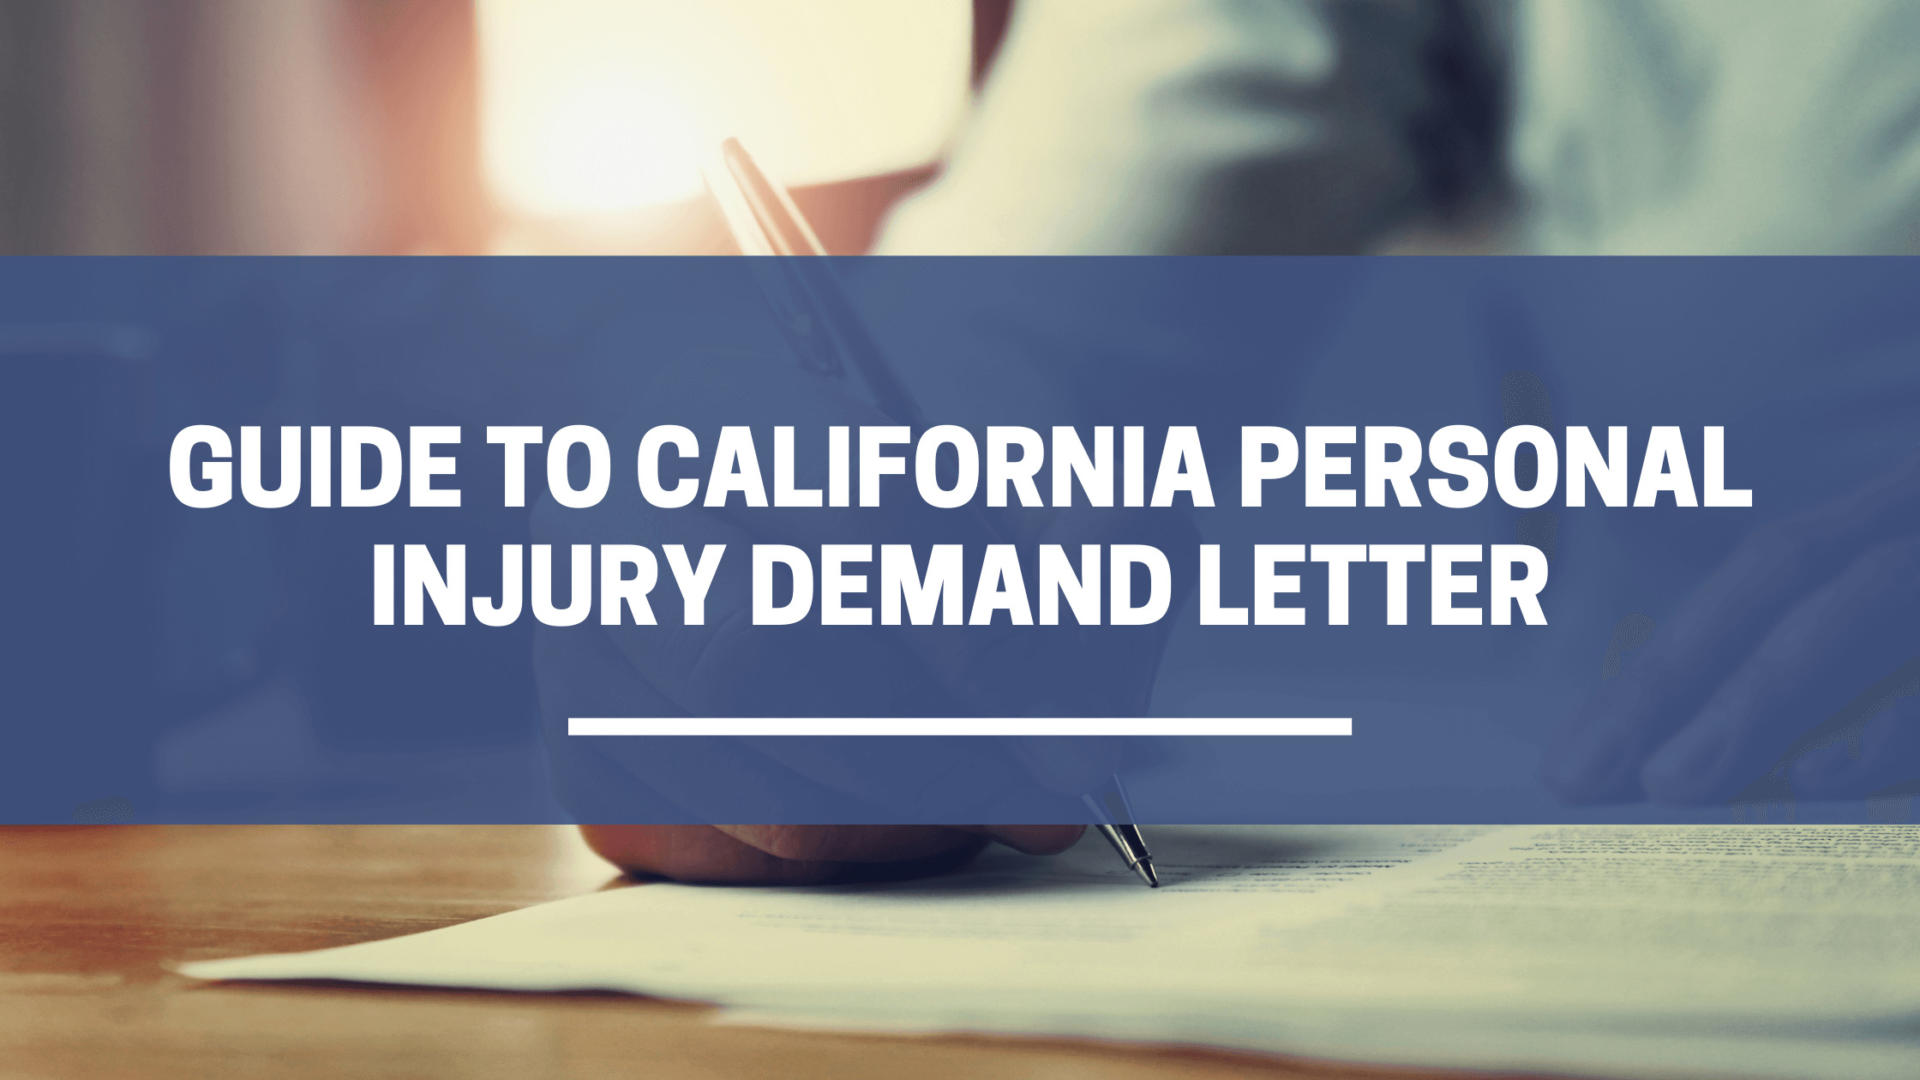 Guía de la carta de demanda por lesiones personales de California